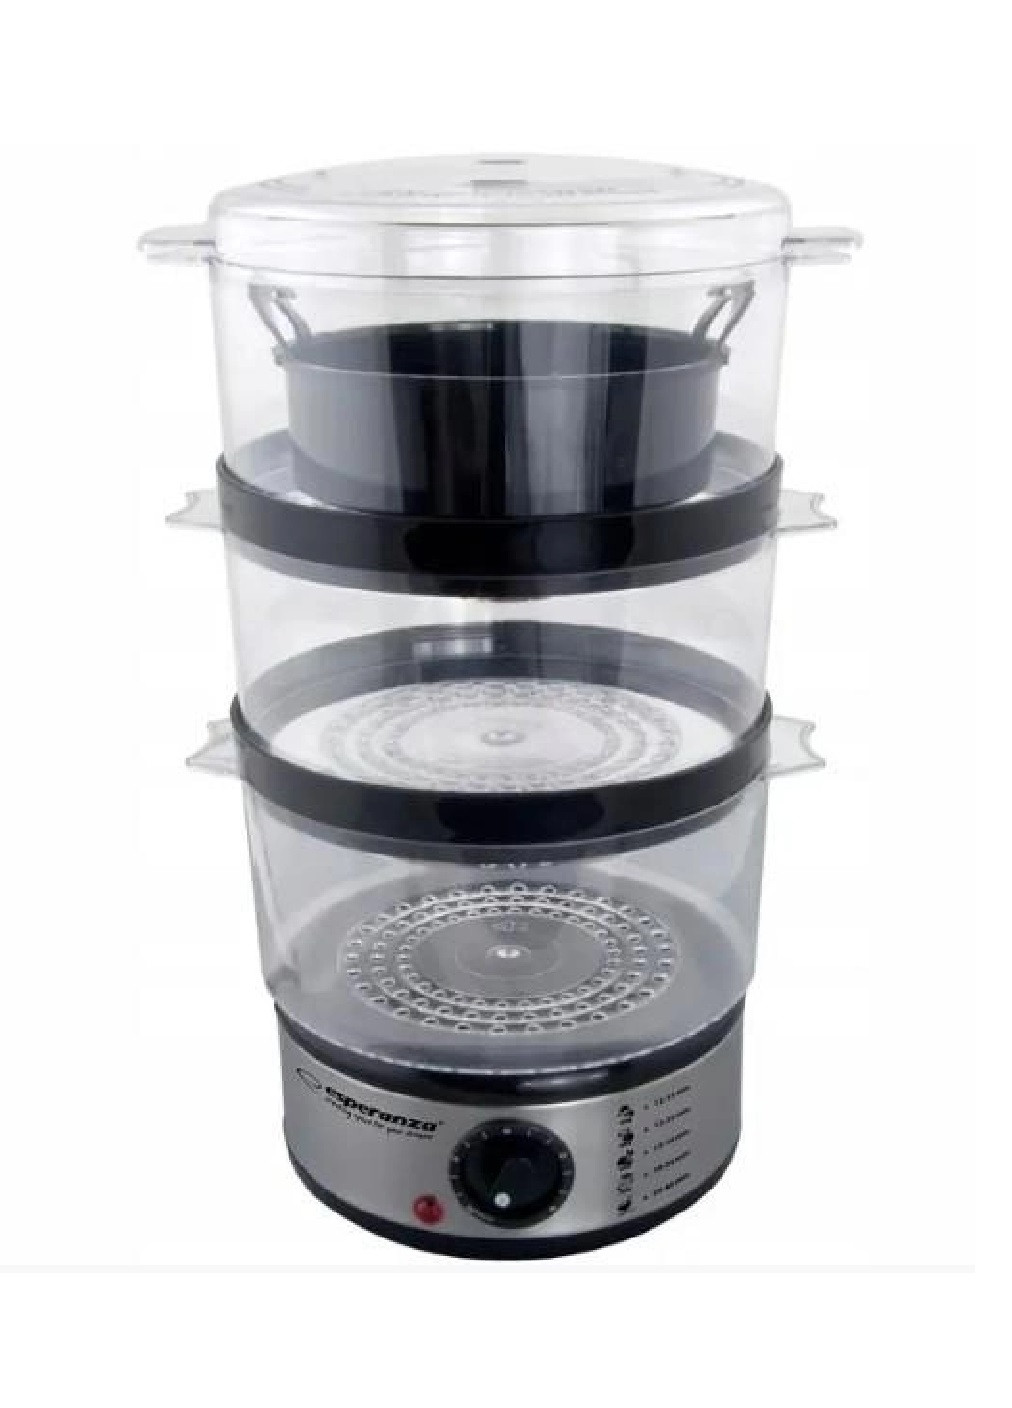 Пароварка кухонна апарат машинка прилад для приготування страв на пару компактна портативна 400 Вт (475165-Prob) Unbranded (262596924)